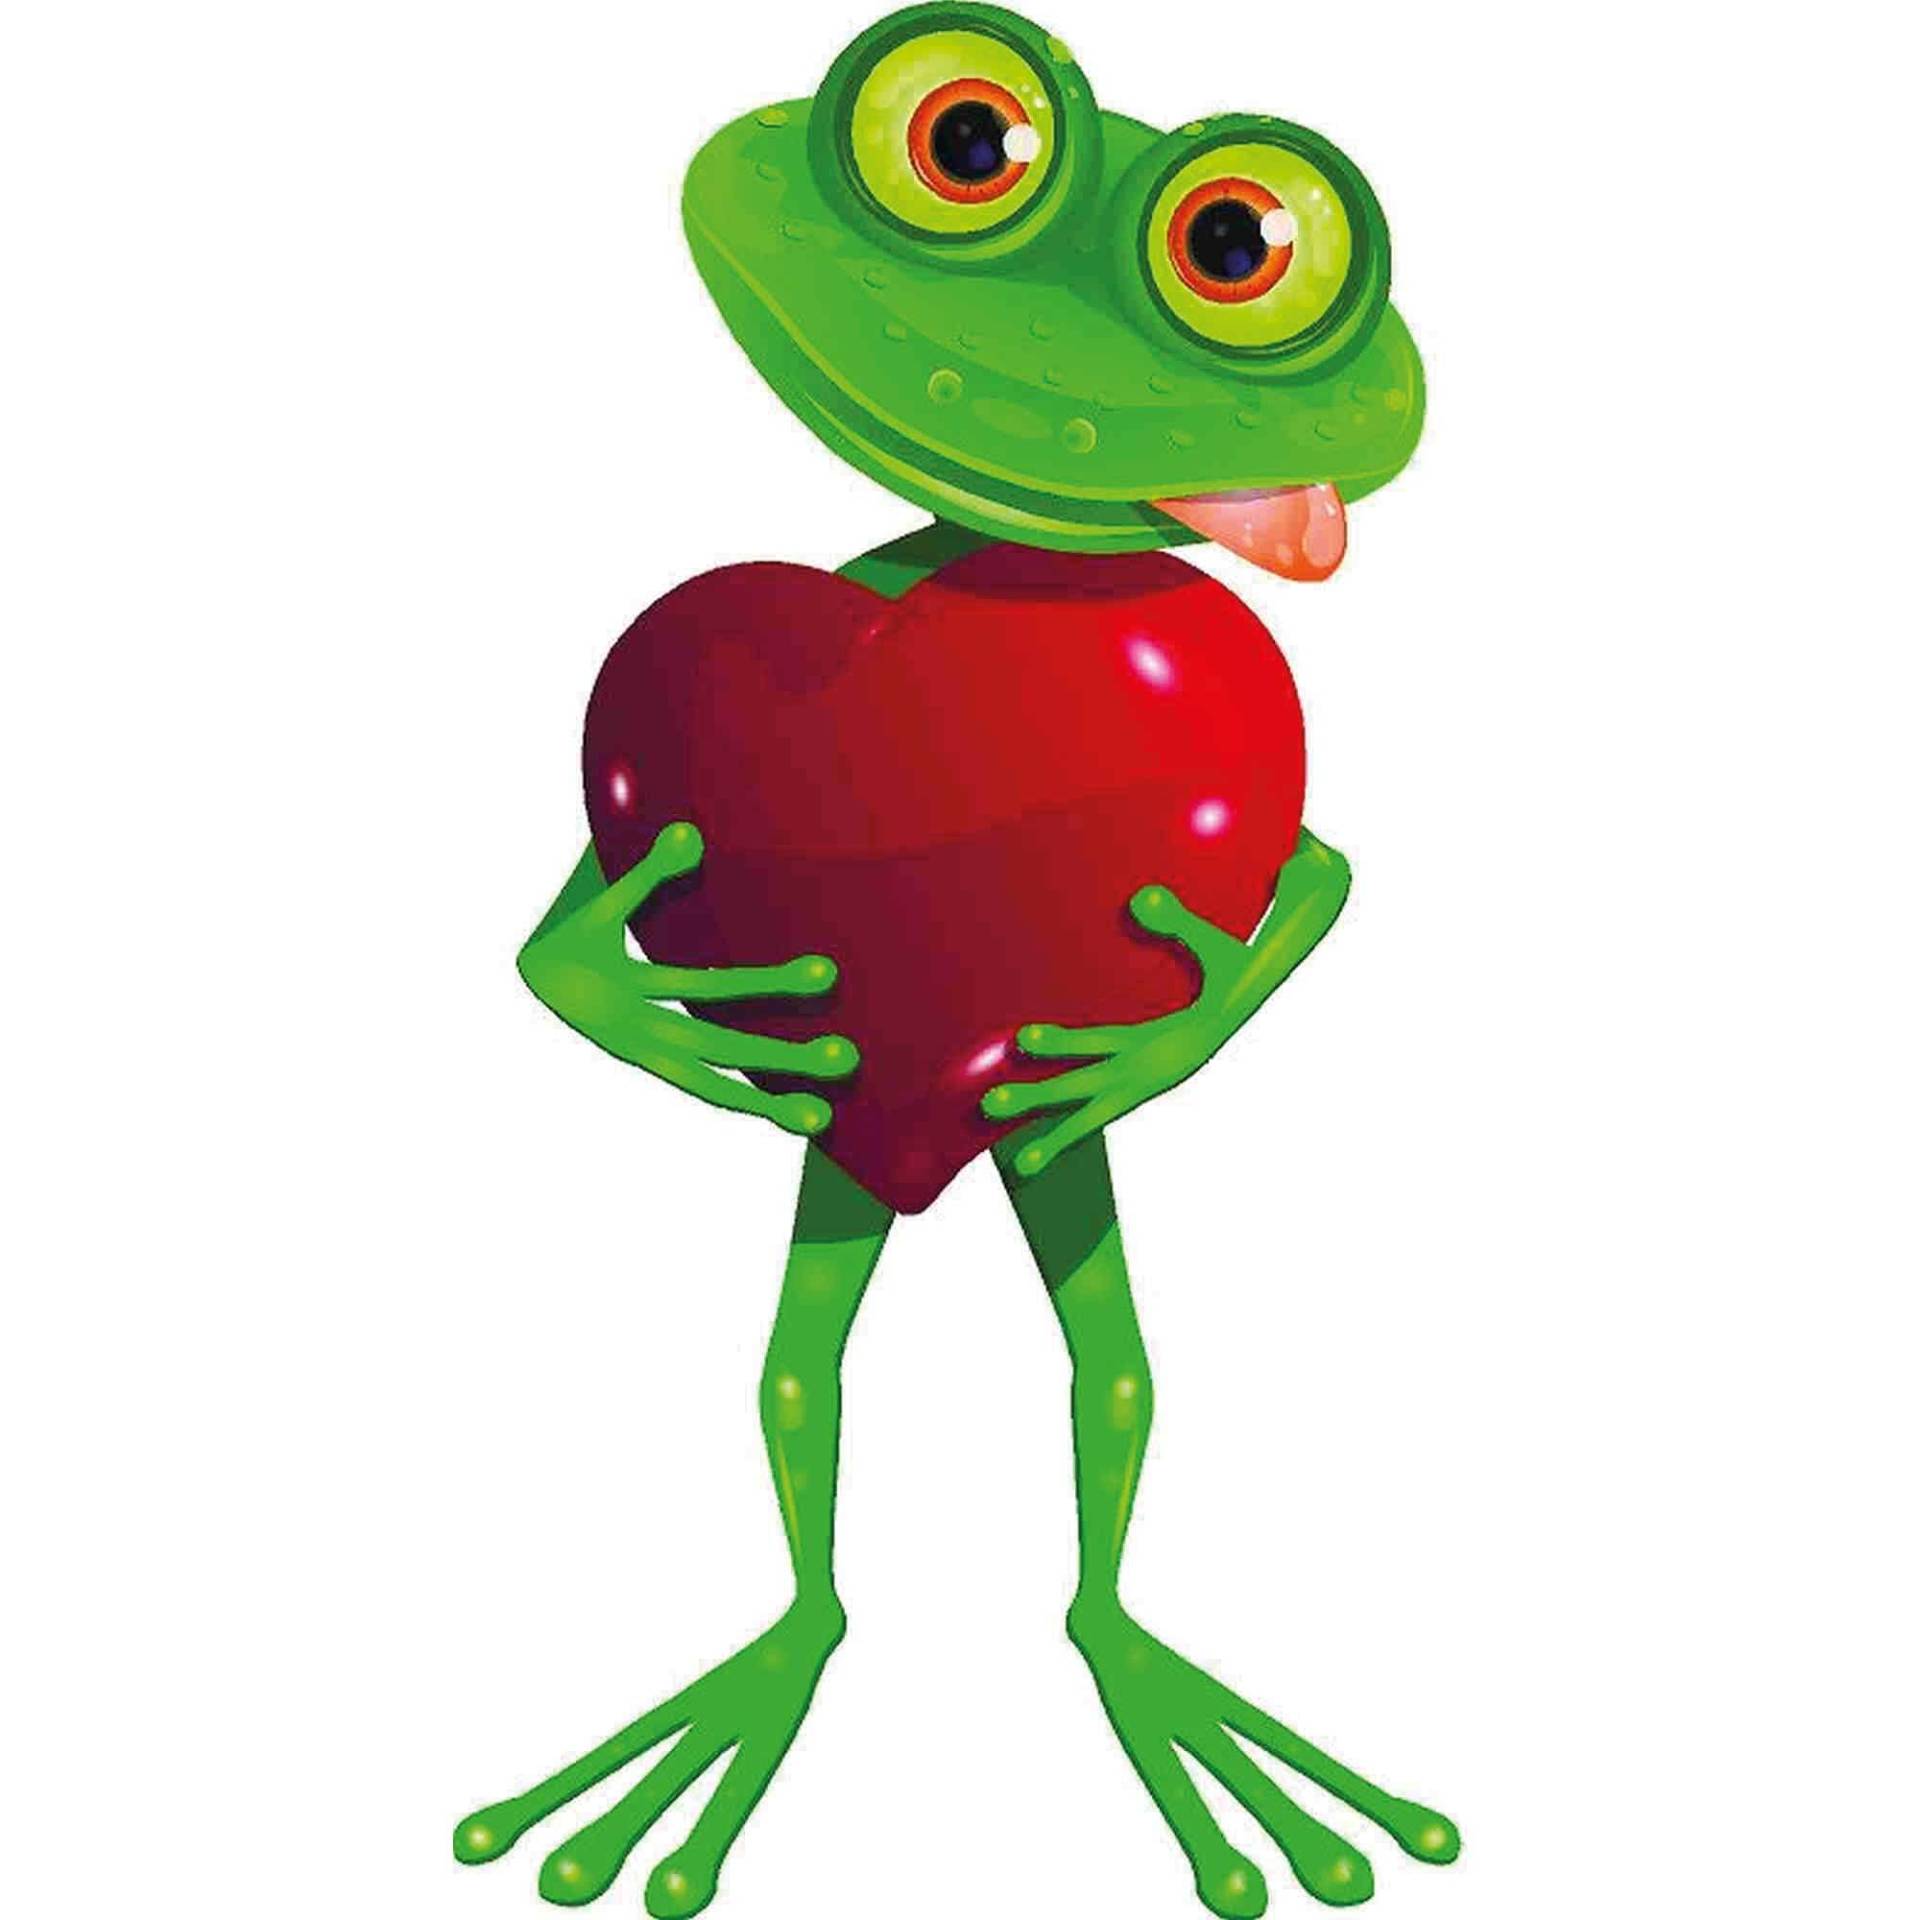 kleberio Aufkleber Sticker Frosch mit Herz selbstklebend Autoaufkleber Sticker für Kinder Bild Dekoration Set Car Wohnwagen wetterfest 16 x 30 cm von kleberio